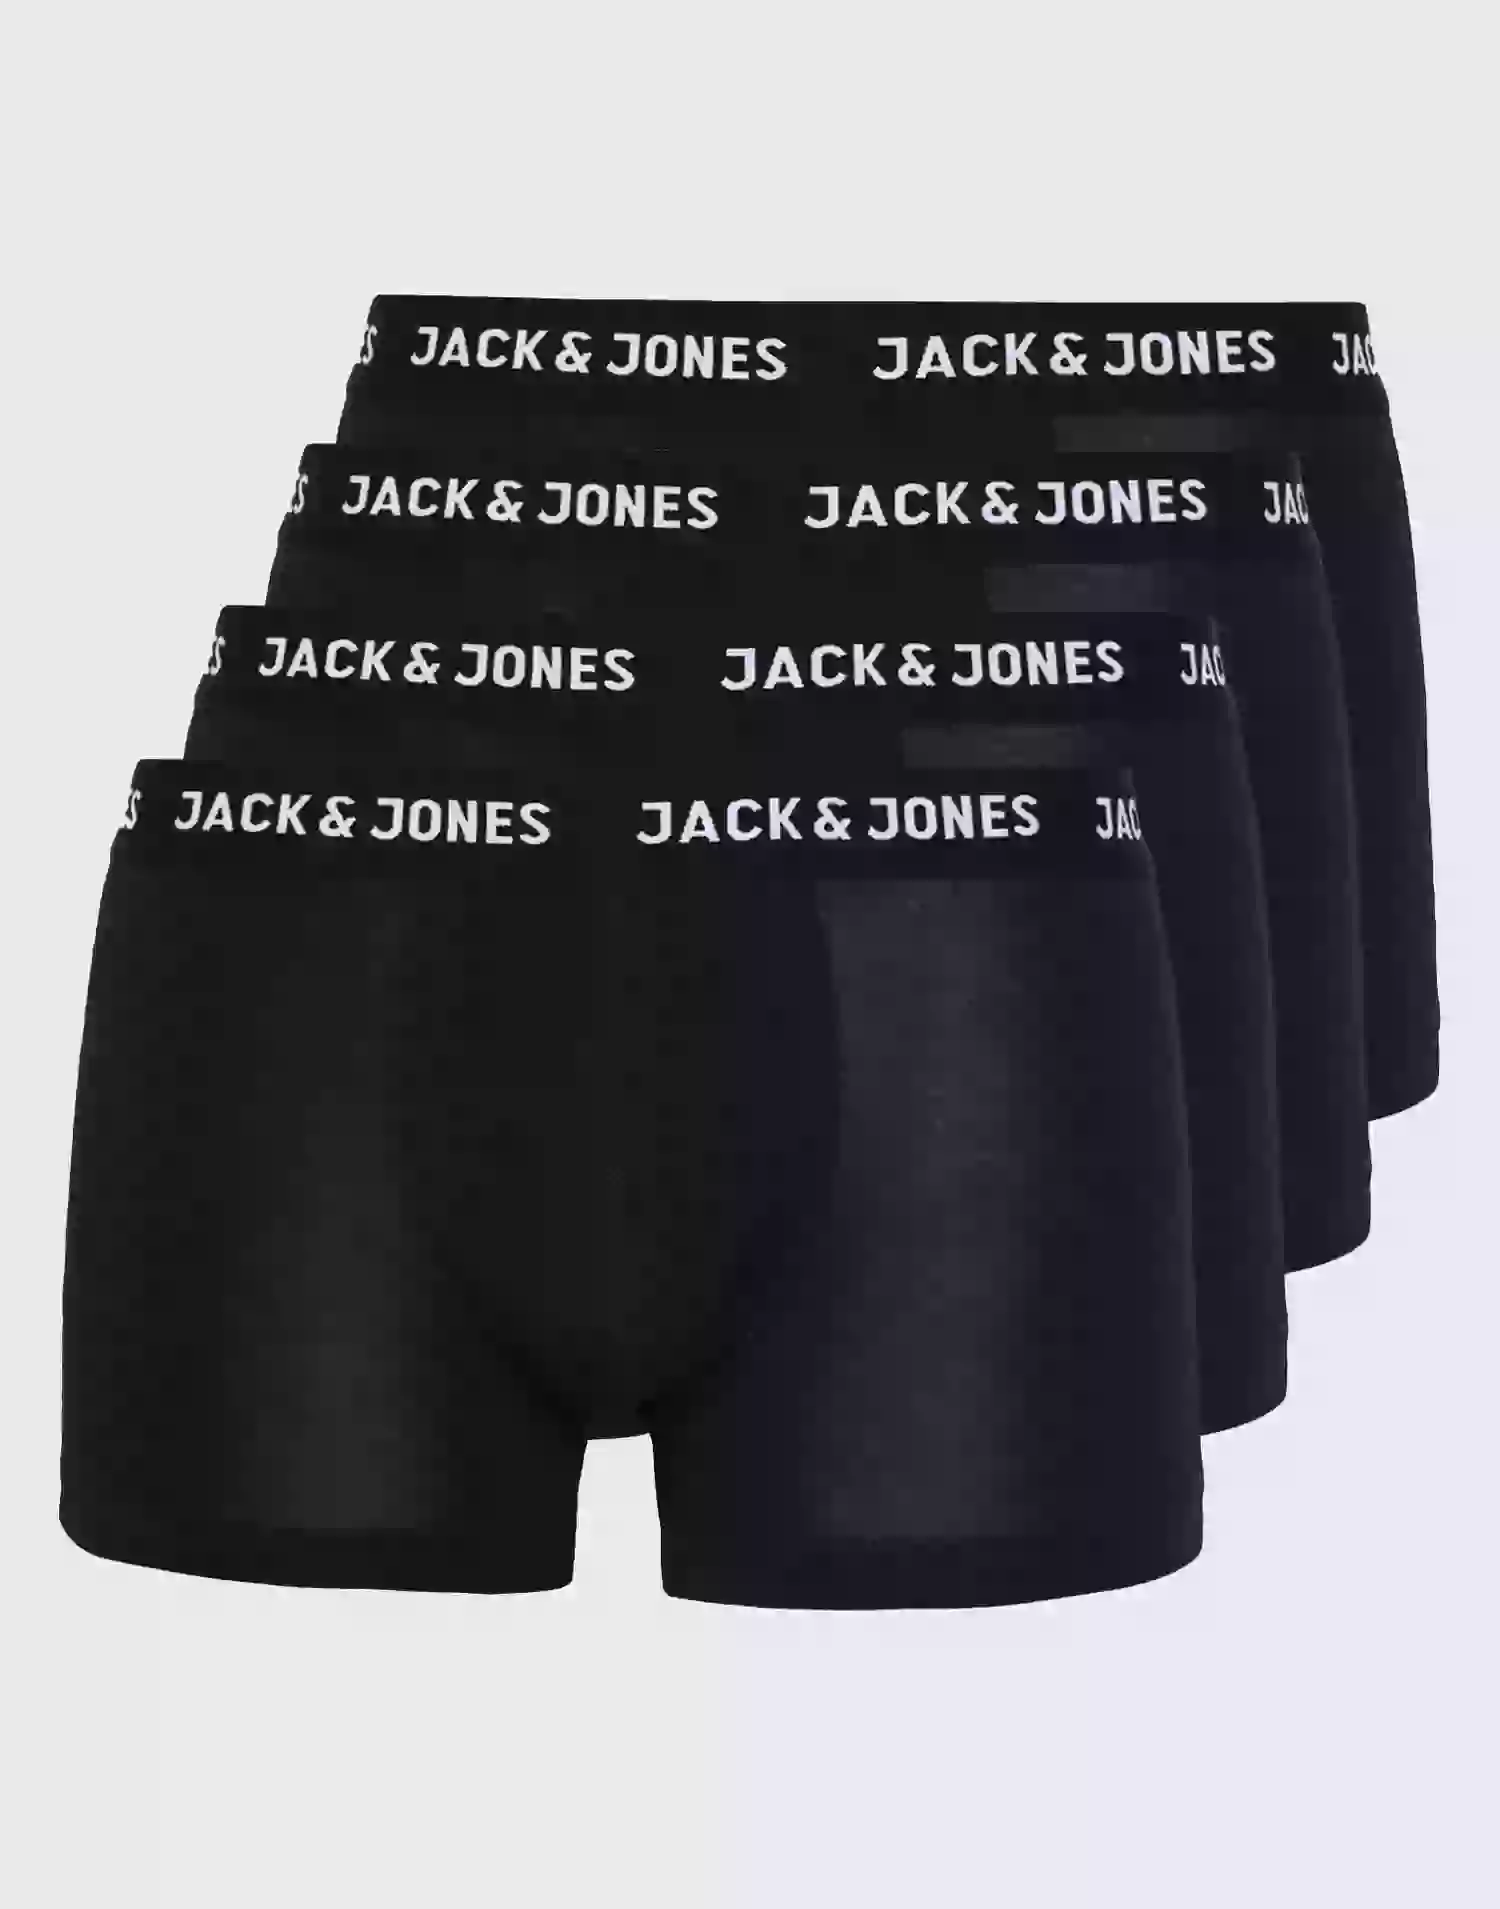 Jack & Jones Jachuey Trunks 5 Pack Noos Underbukser Sort